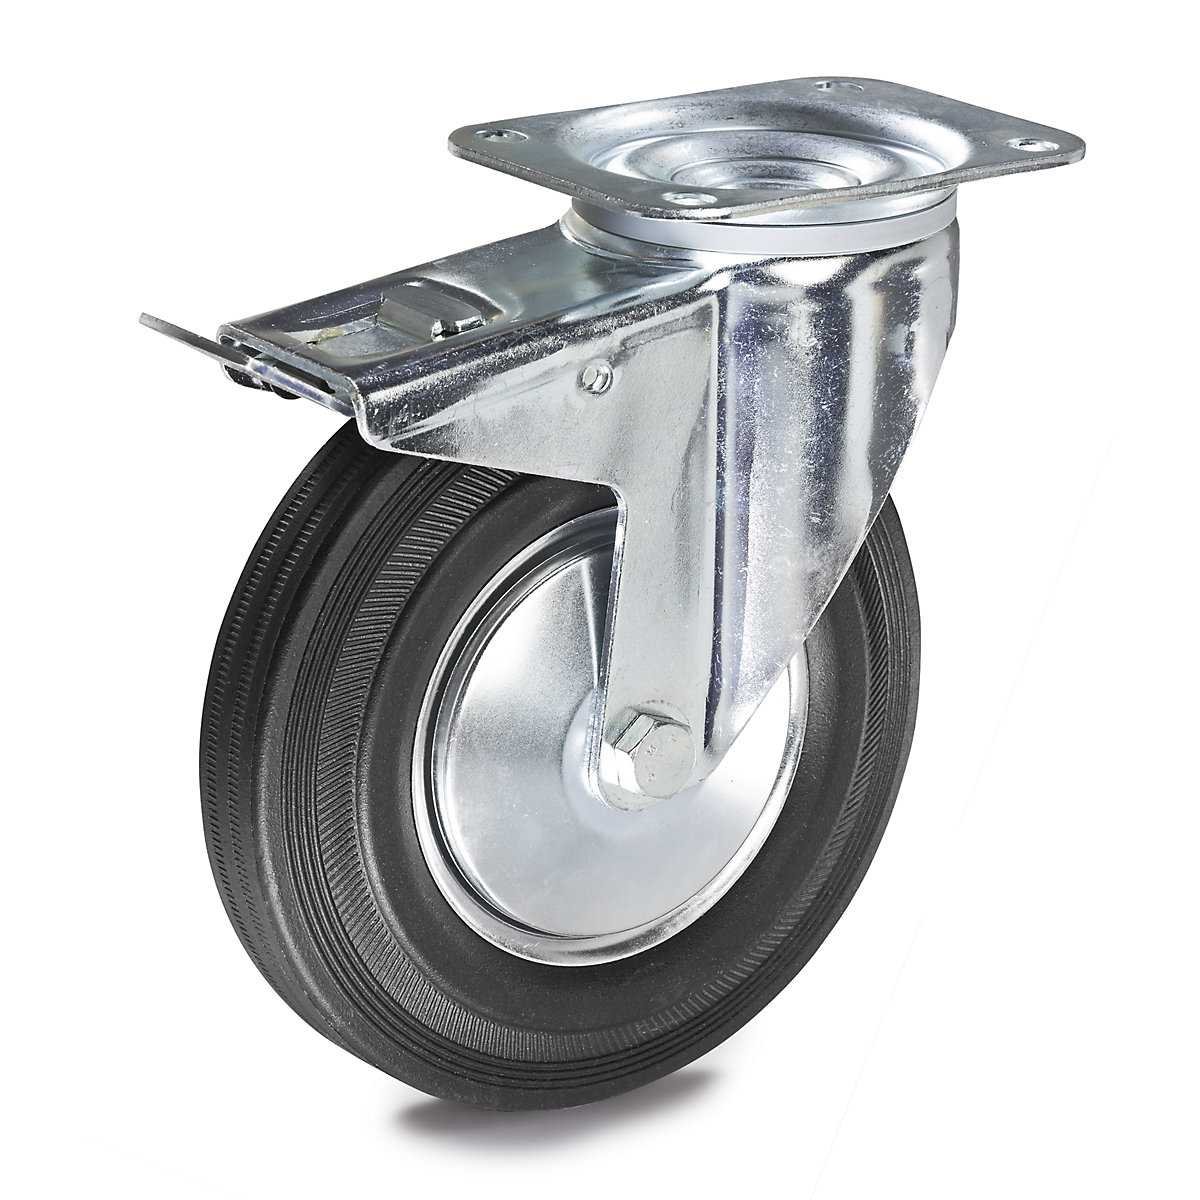 Celogumová obruč – TENTE, Ø x šírka kolesa 160 x 40 mm, otočné koliesko s dvojitou brzdou-4